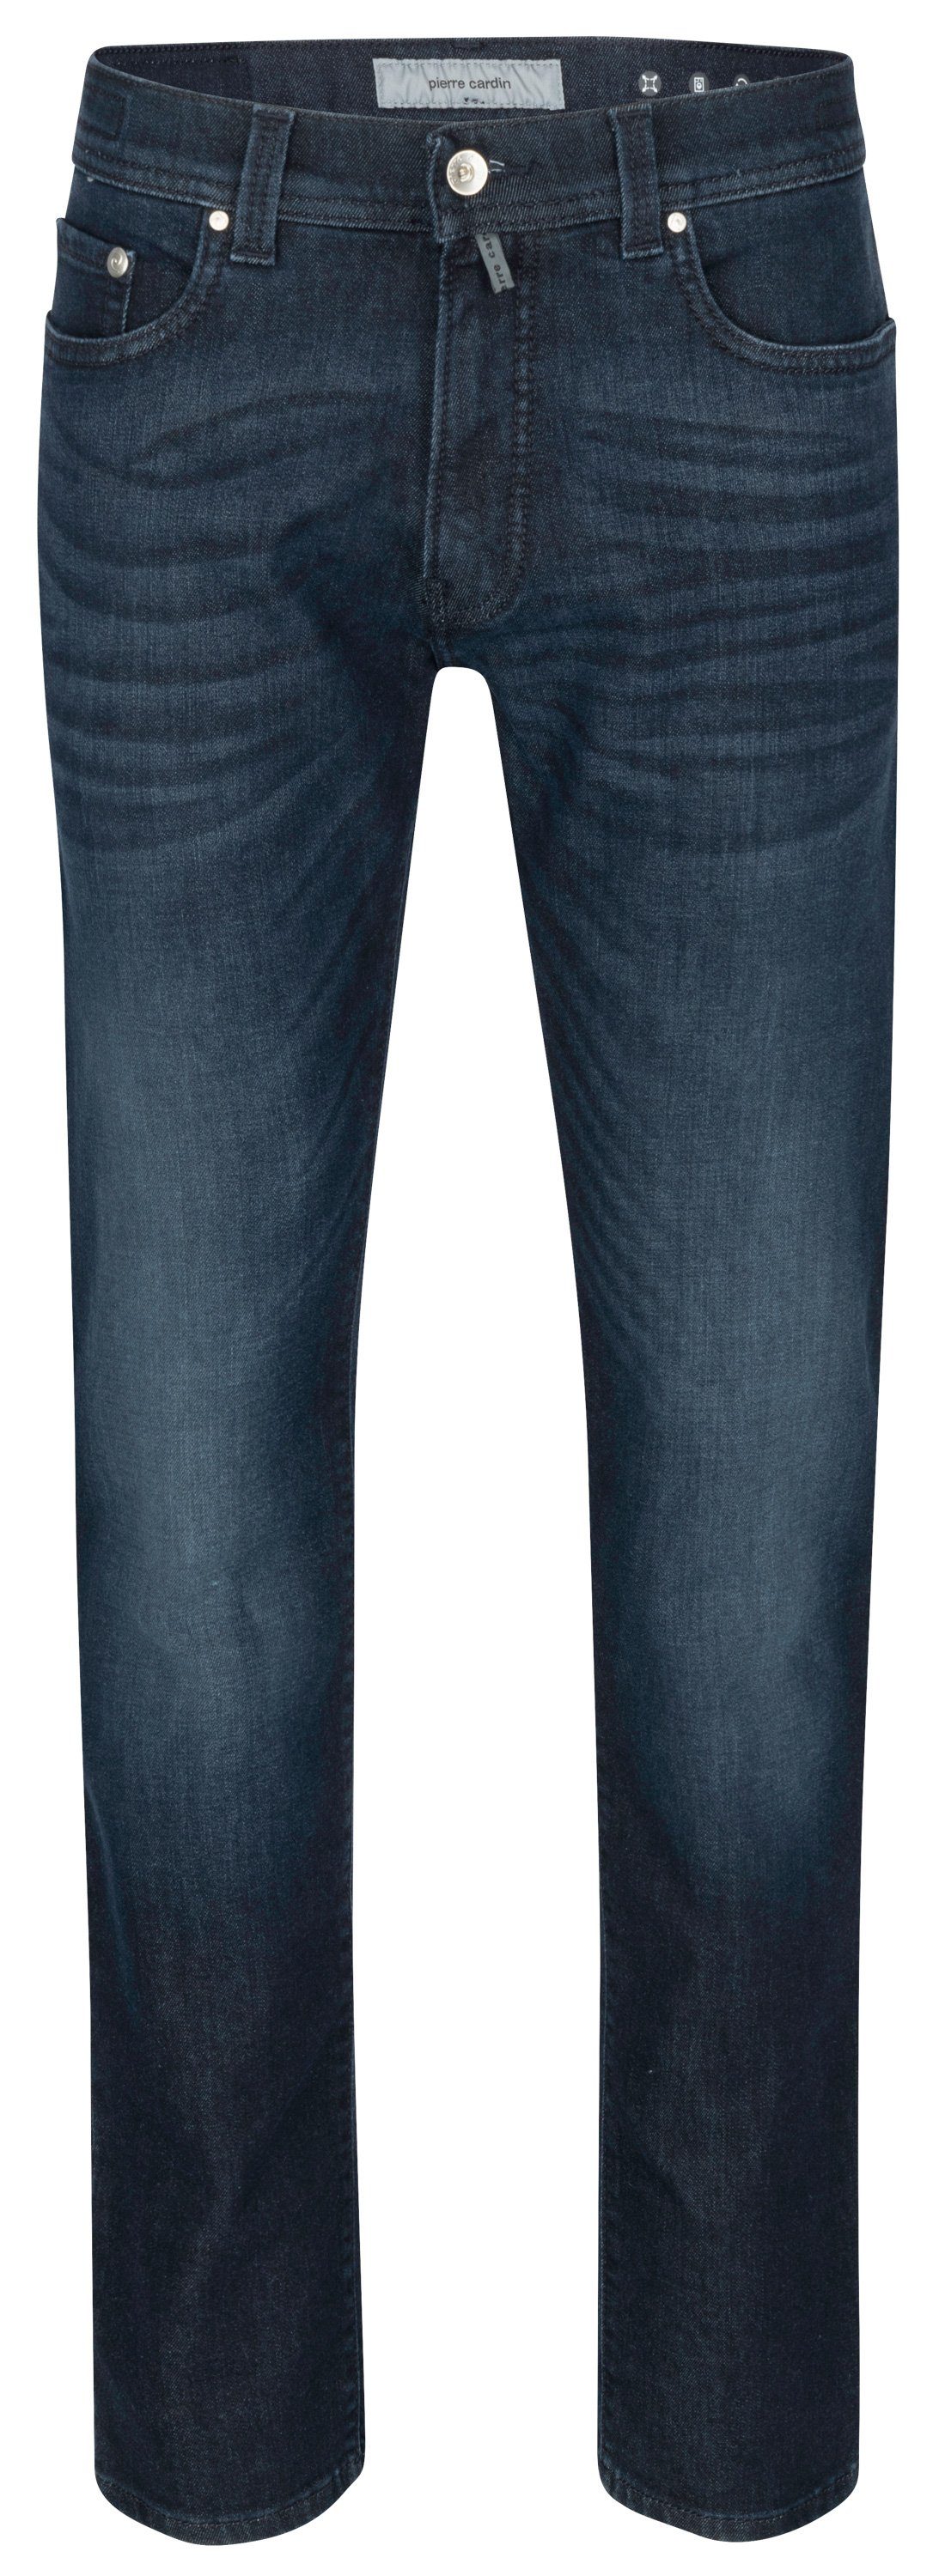 Pierre Cardin 5-Pocket-Jeans PIERRE CARDIN LYON TAPERED dark blue used buffies 38510 8105.6814 -